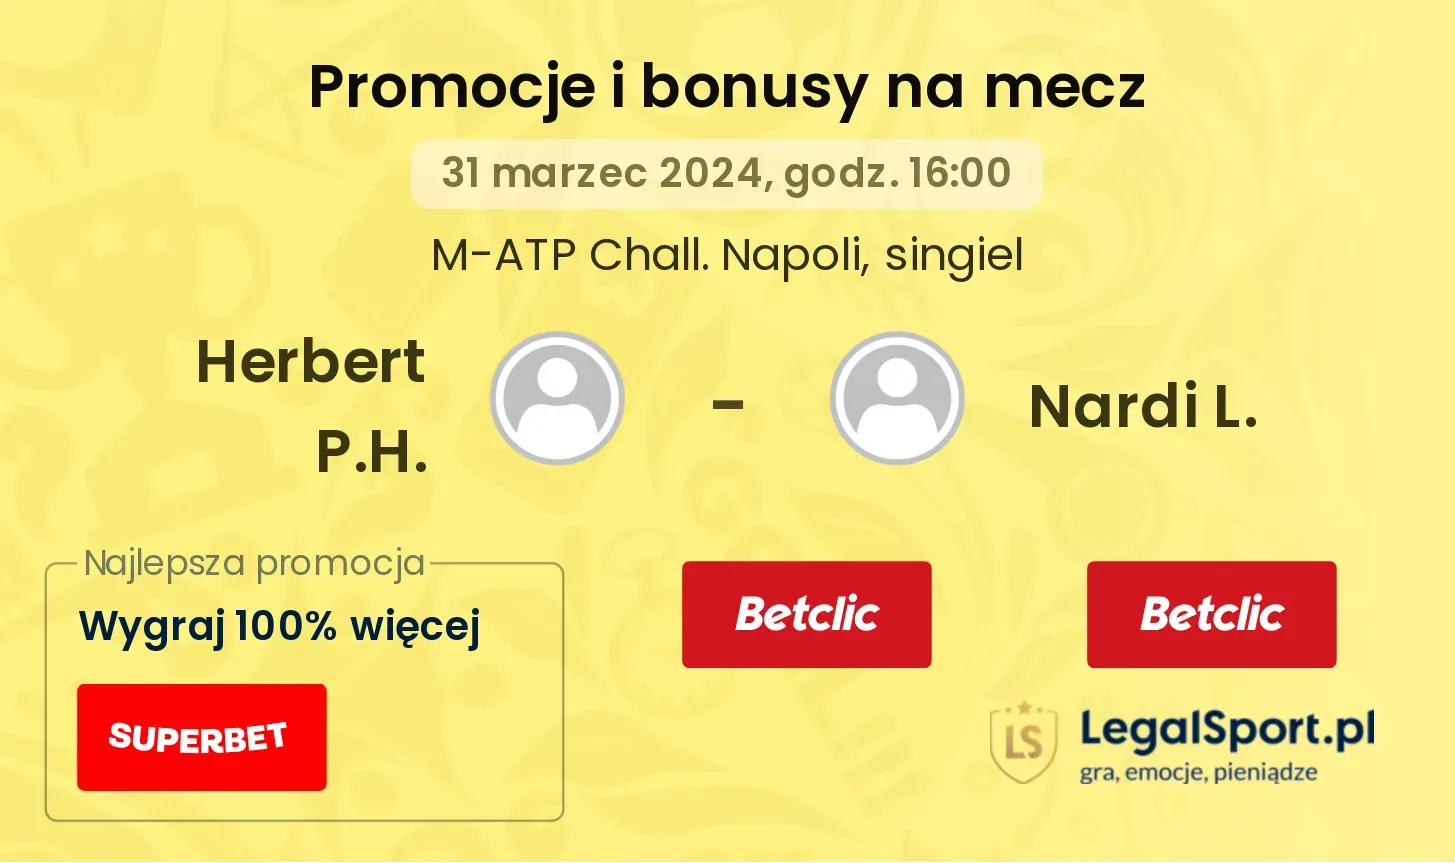 Herbert P.H. - Nardi L. promocje bonusy na mecz